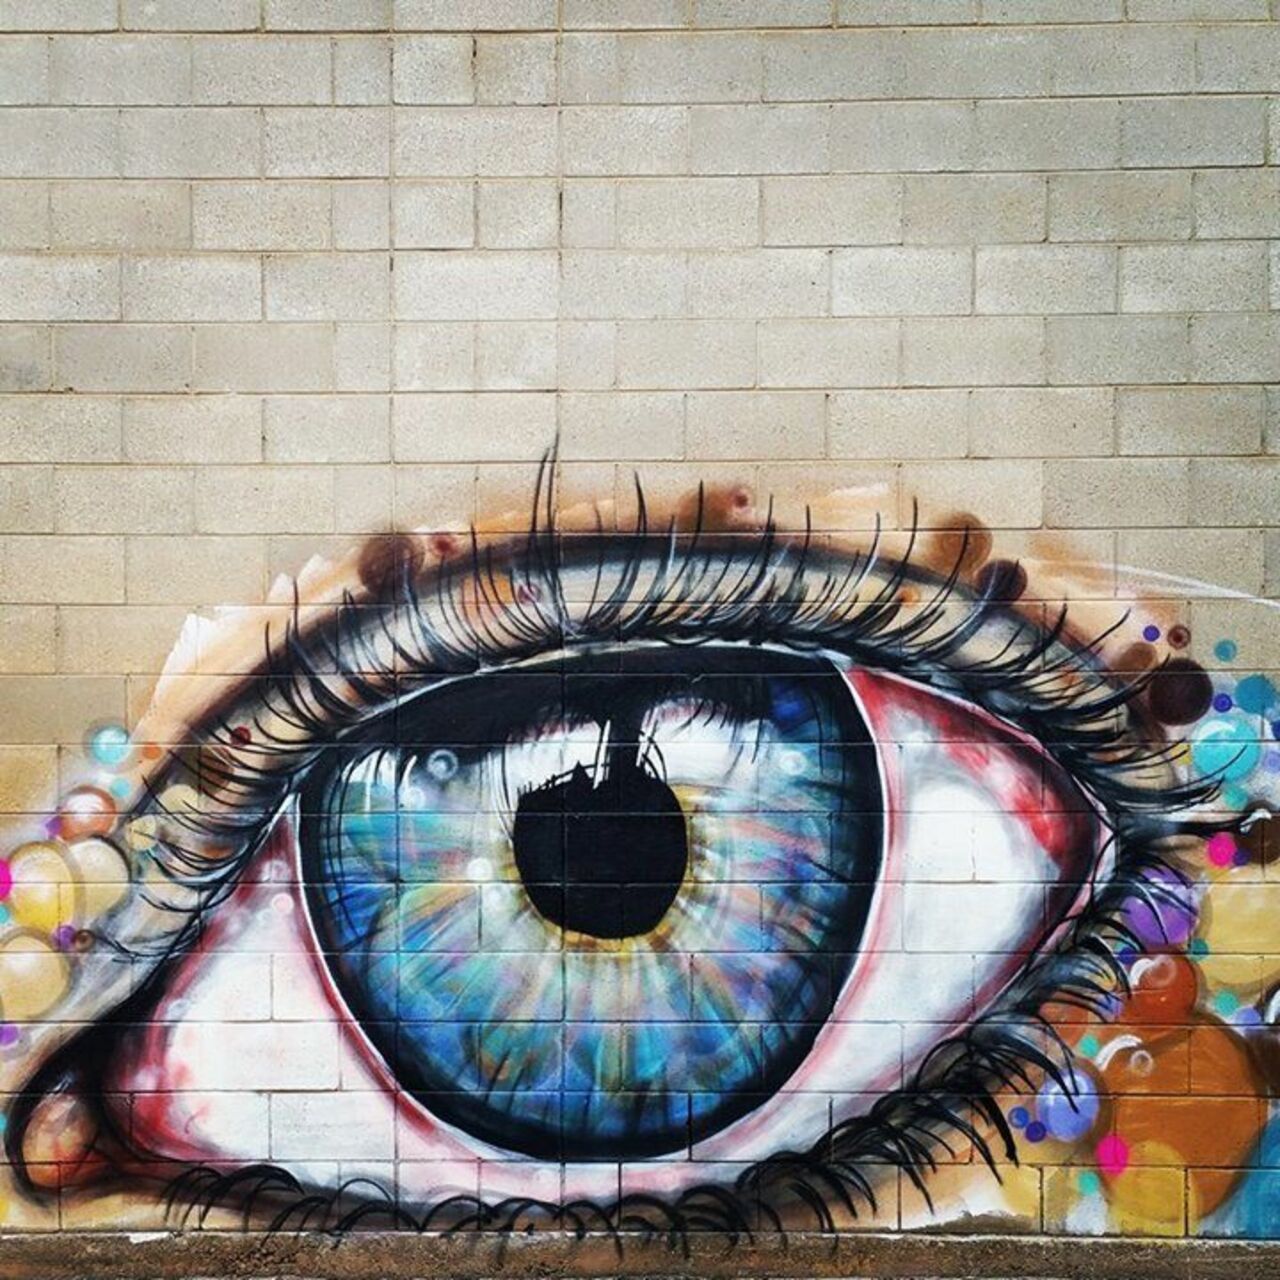 Adelaide#streetart #mural #graffiti #art https://t.co/4ExUvJsE34